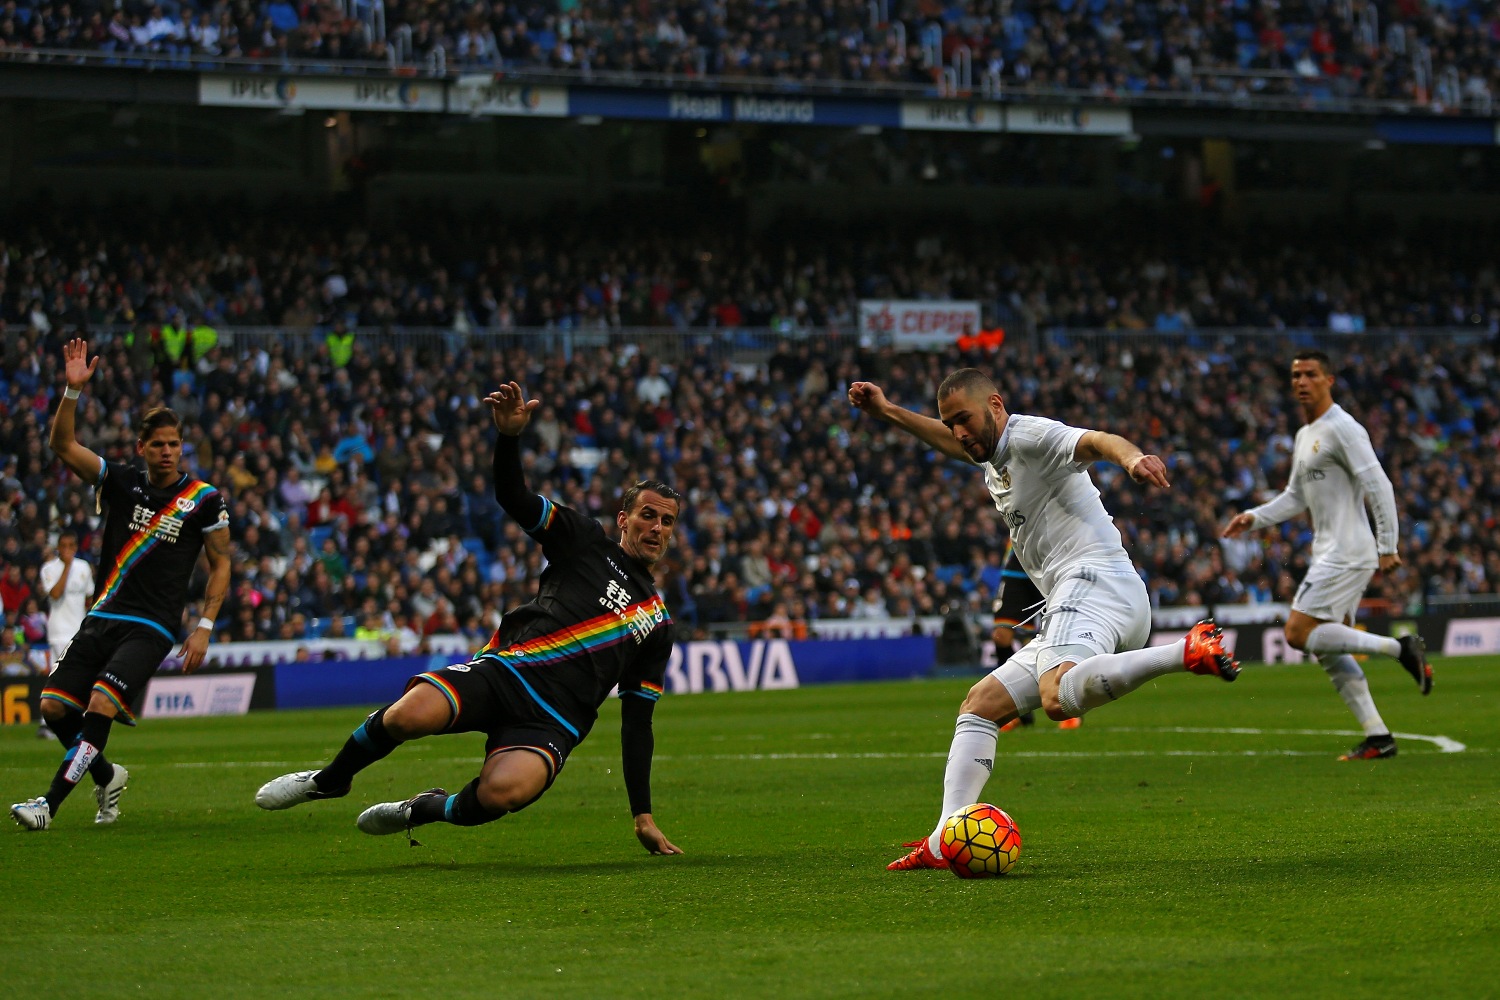 El Real Madrid golea al Rayo Vallecano por 10-2 en su jornada de Liga